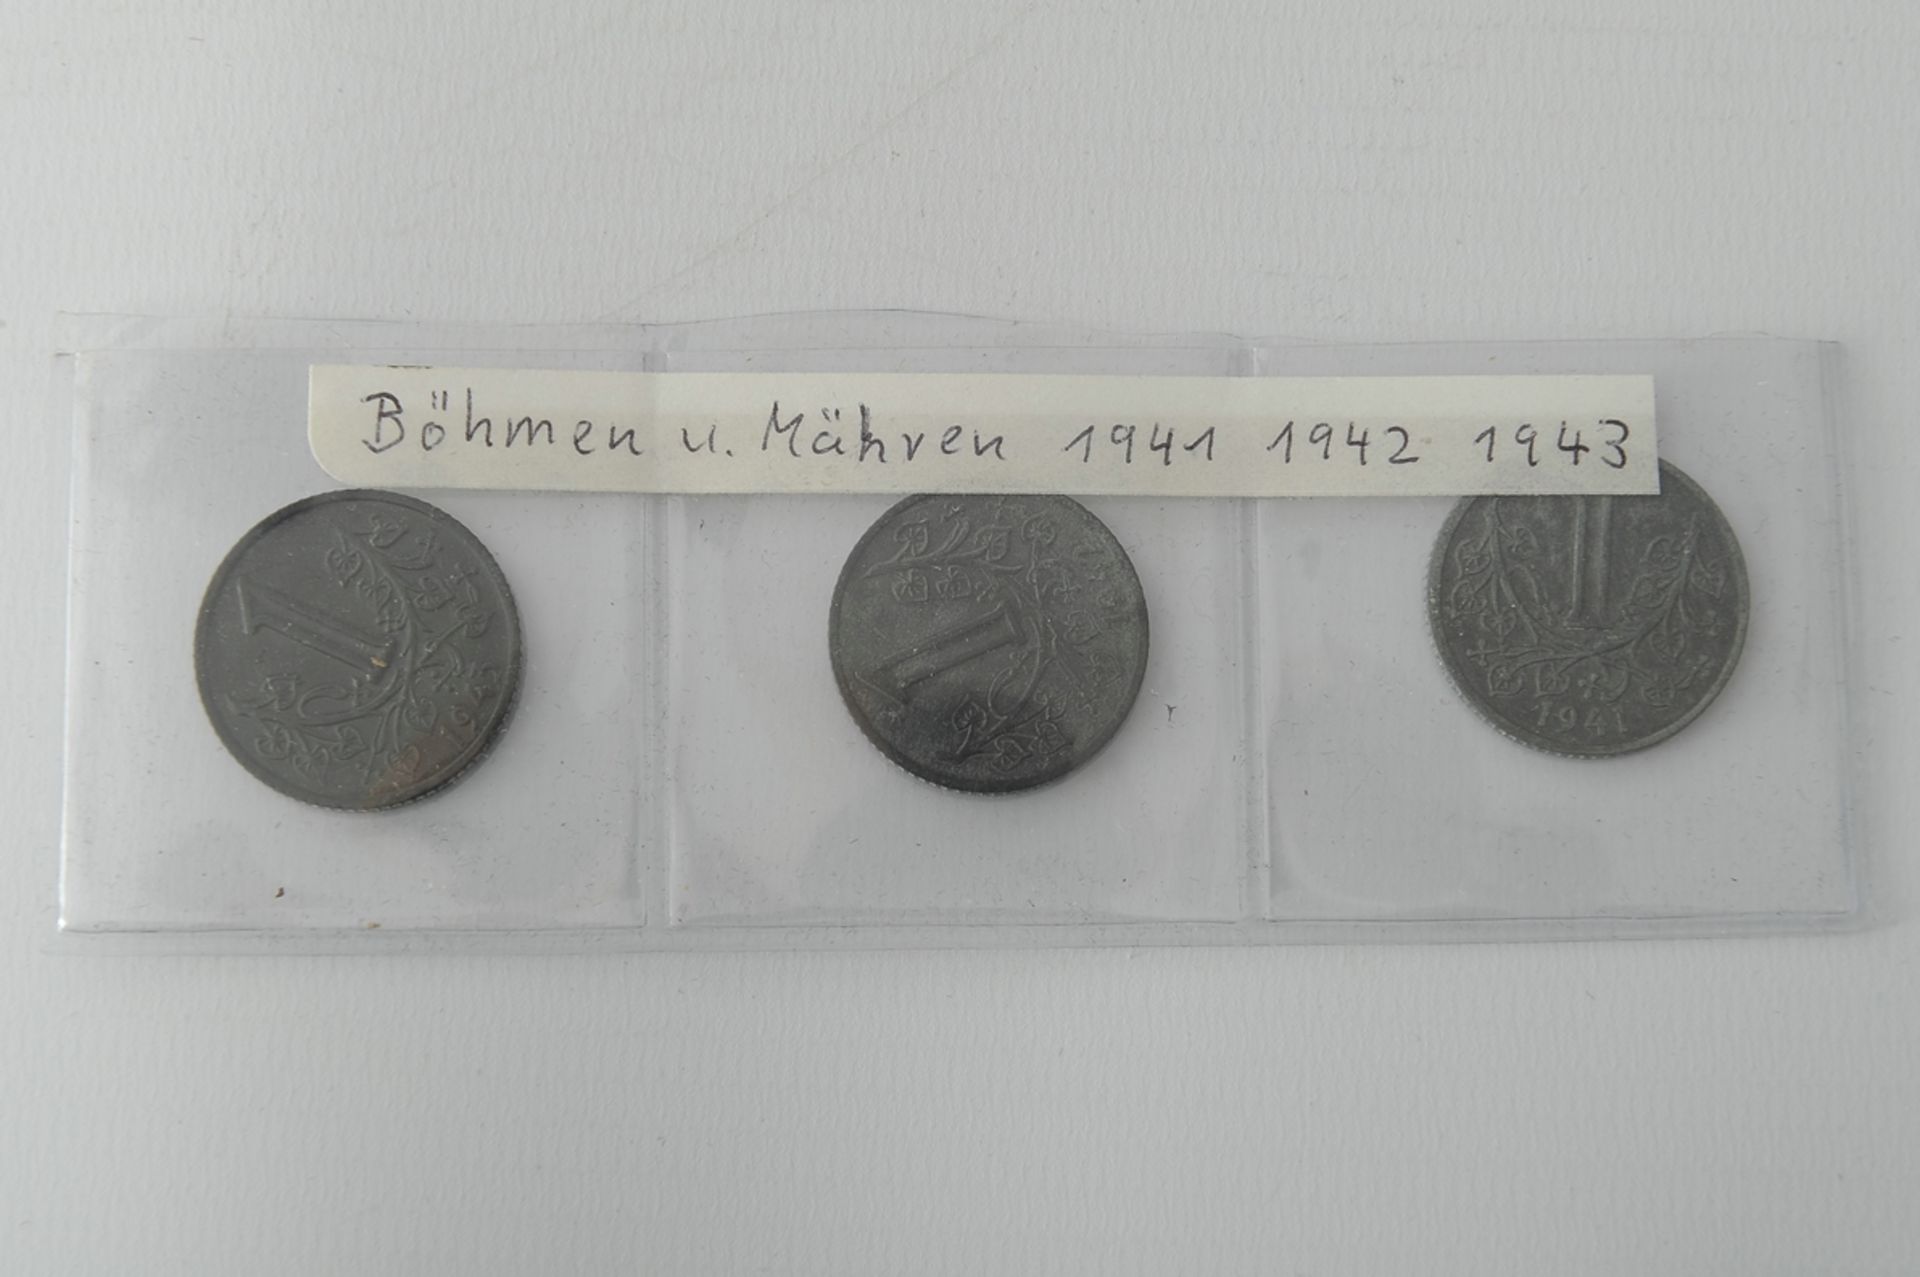 Kleine "Münzen und Medaillen" - Sammlung aus aller Welt, in Alukoffer: USA - Jahressatz 2005, China - Image 5 of 6